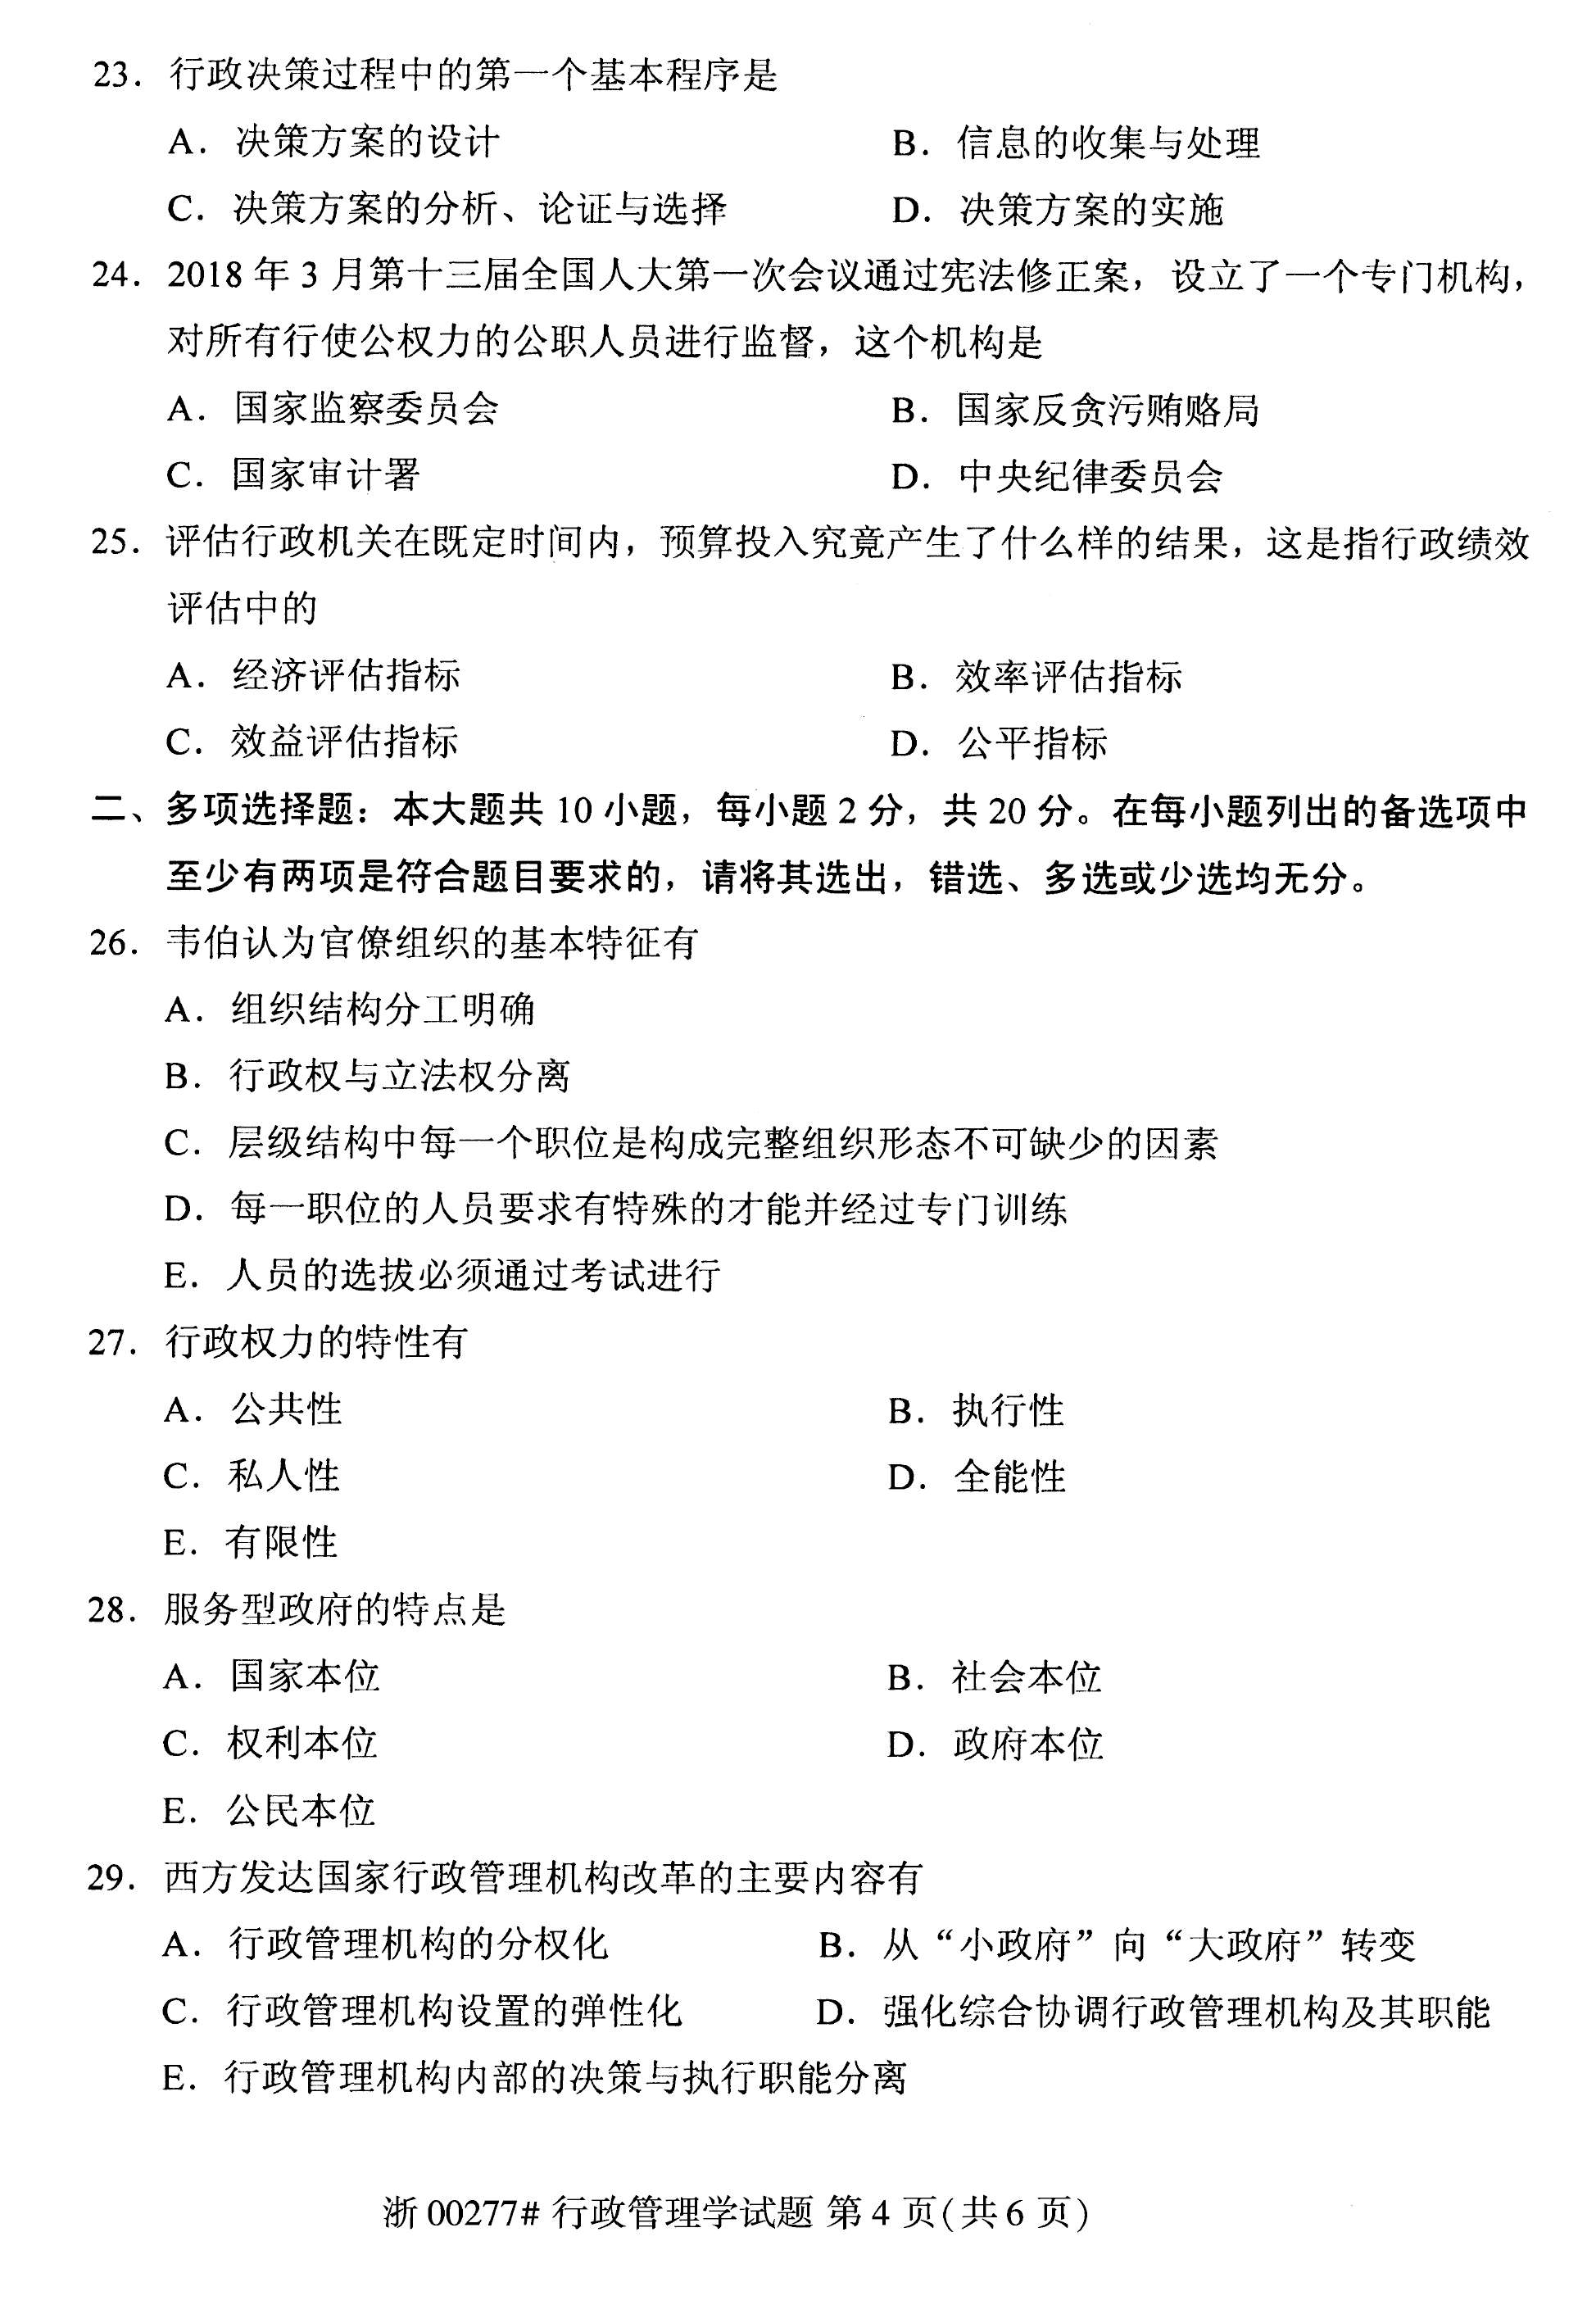 2020年08月贵州省自考00277行政管理学真题及答案解析